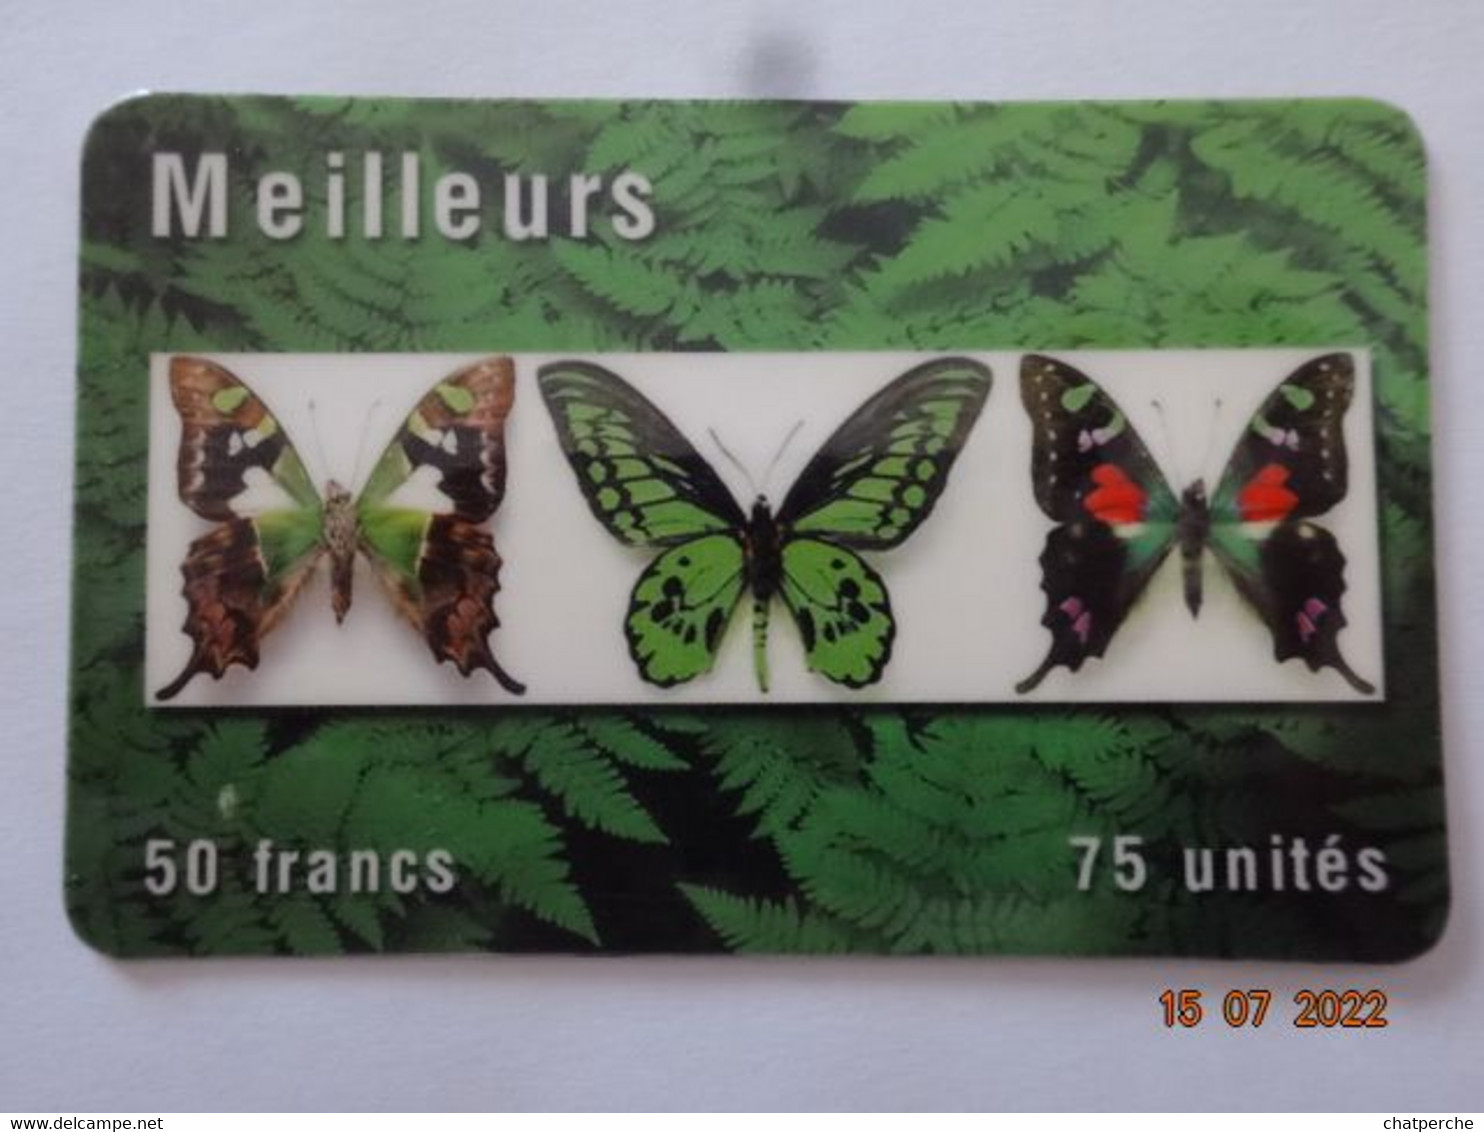 TELECARTE PREPAYEE  MEILLEURS PAPILLONS  50 FRANCS 75 UNITES - FT Tickets